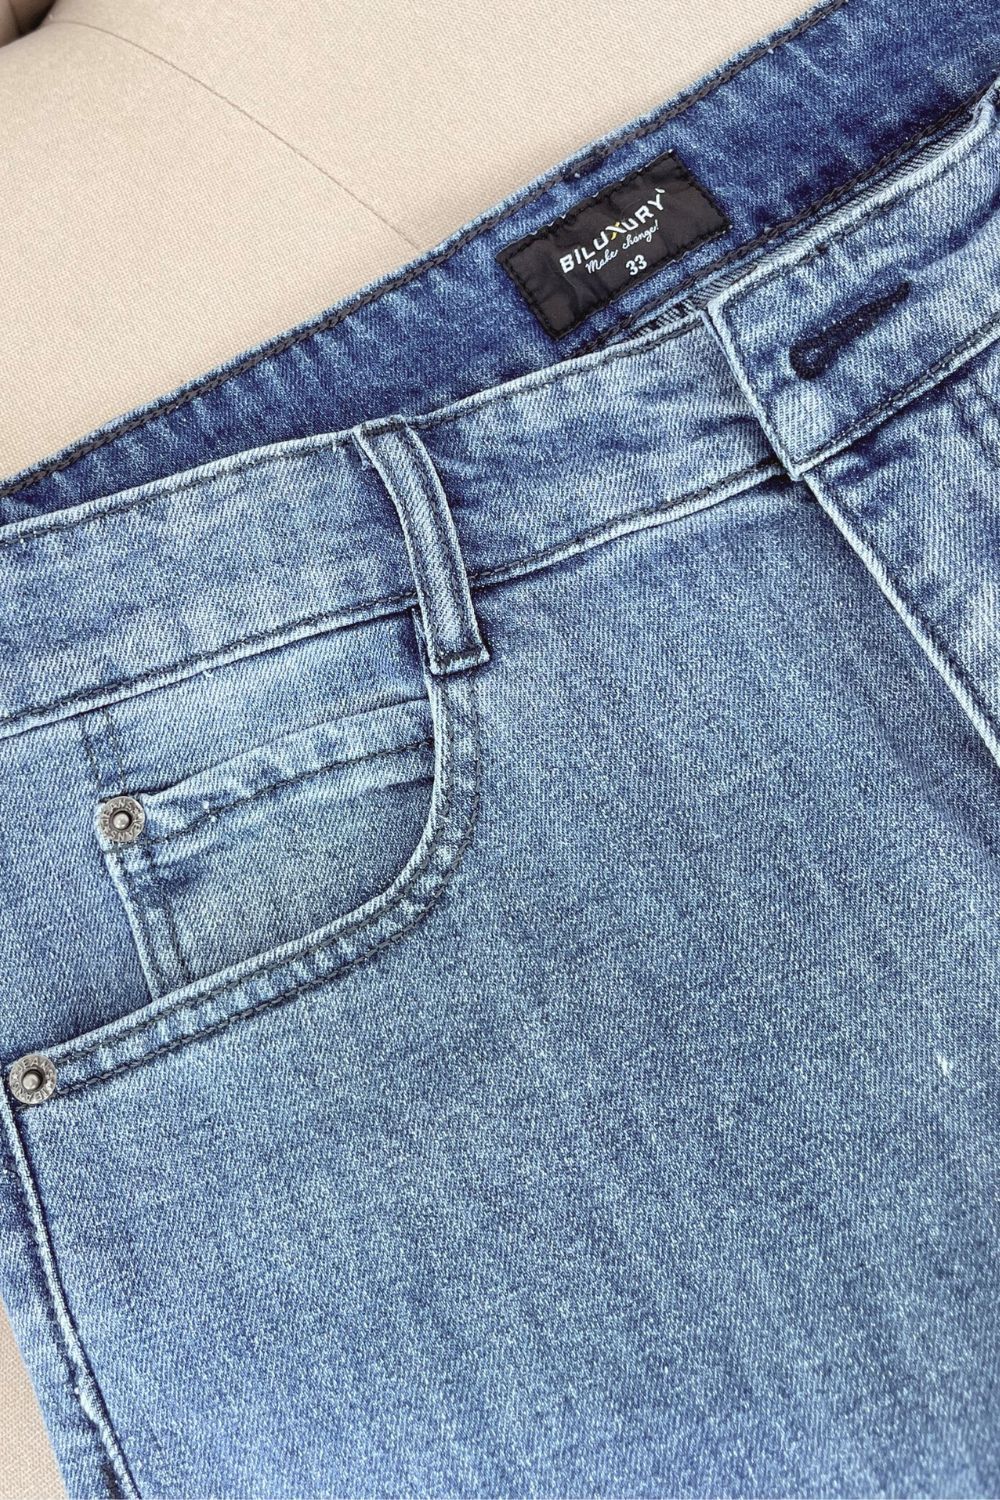  [Giảm 36%] Quần Jeans Cao Cấp Bền Màu, Chống Nhăn, Co Giãn 8QBDB004XNH 